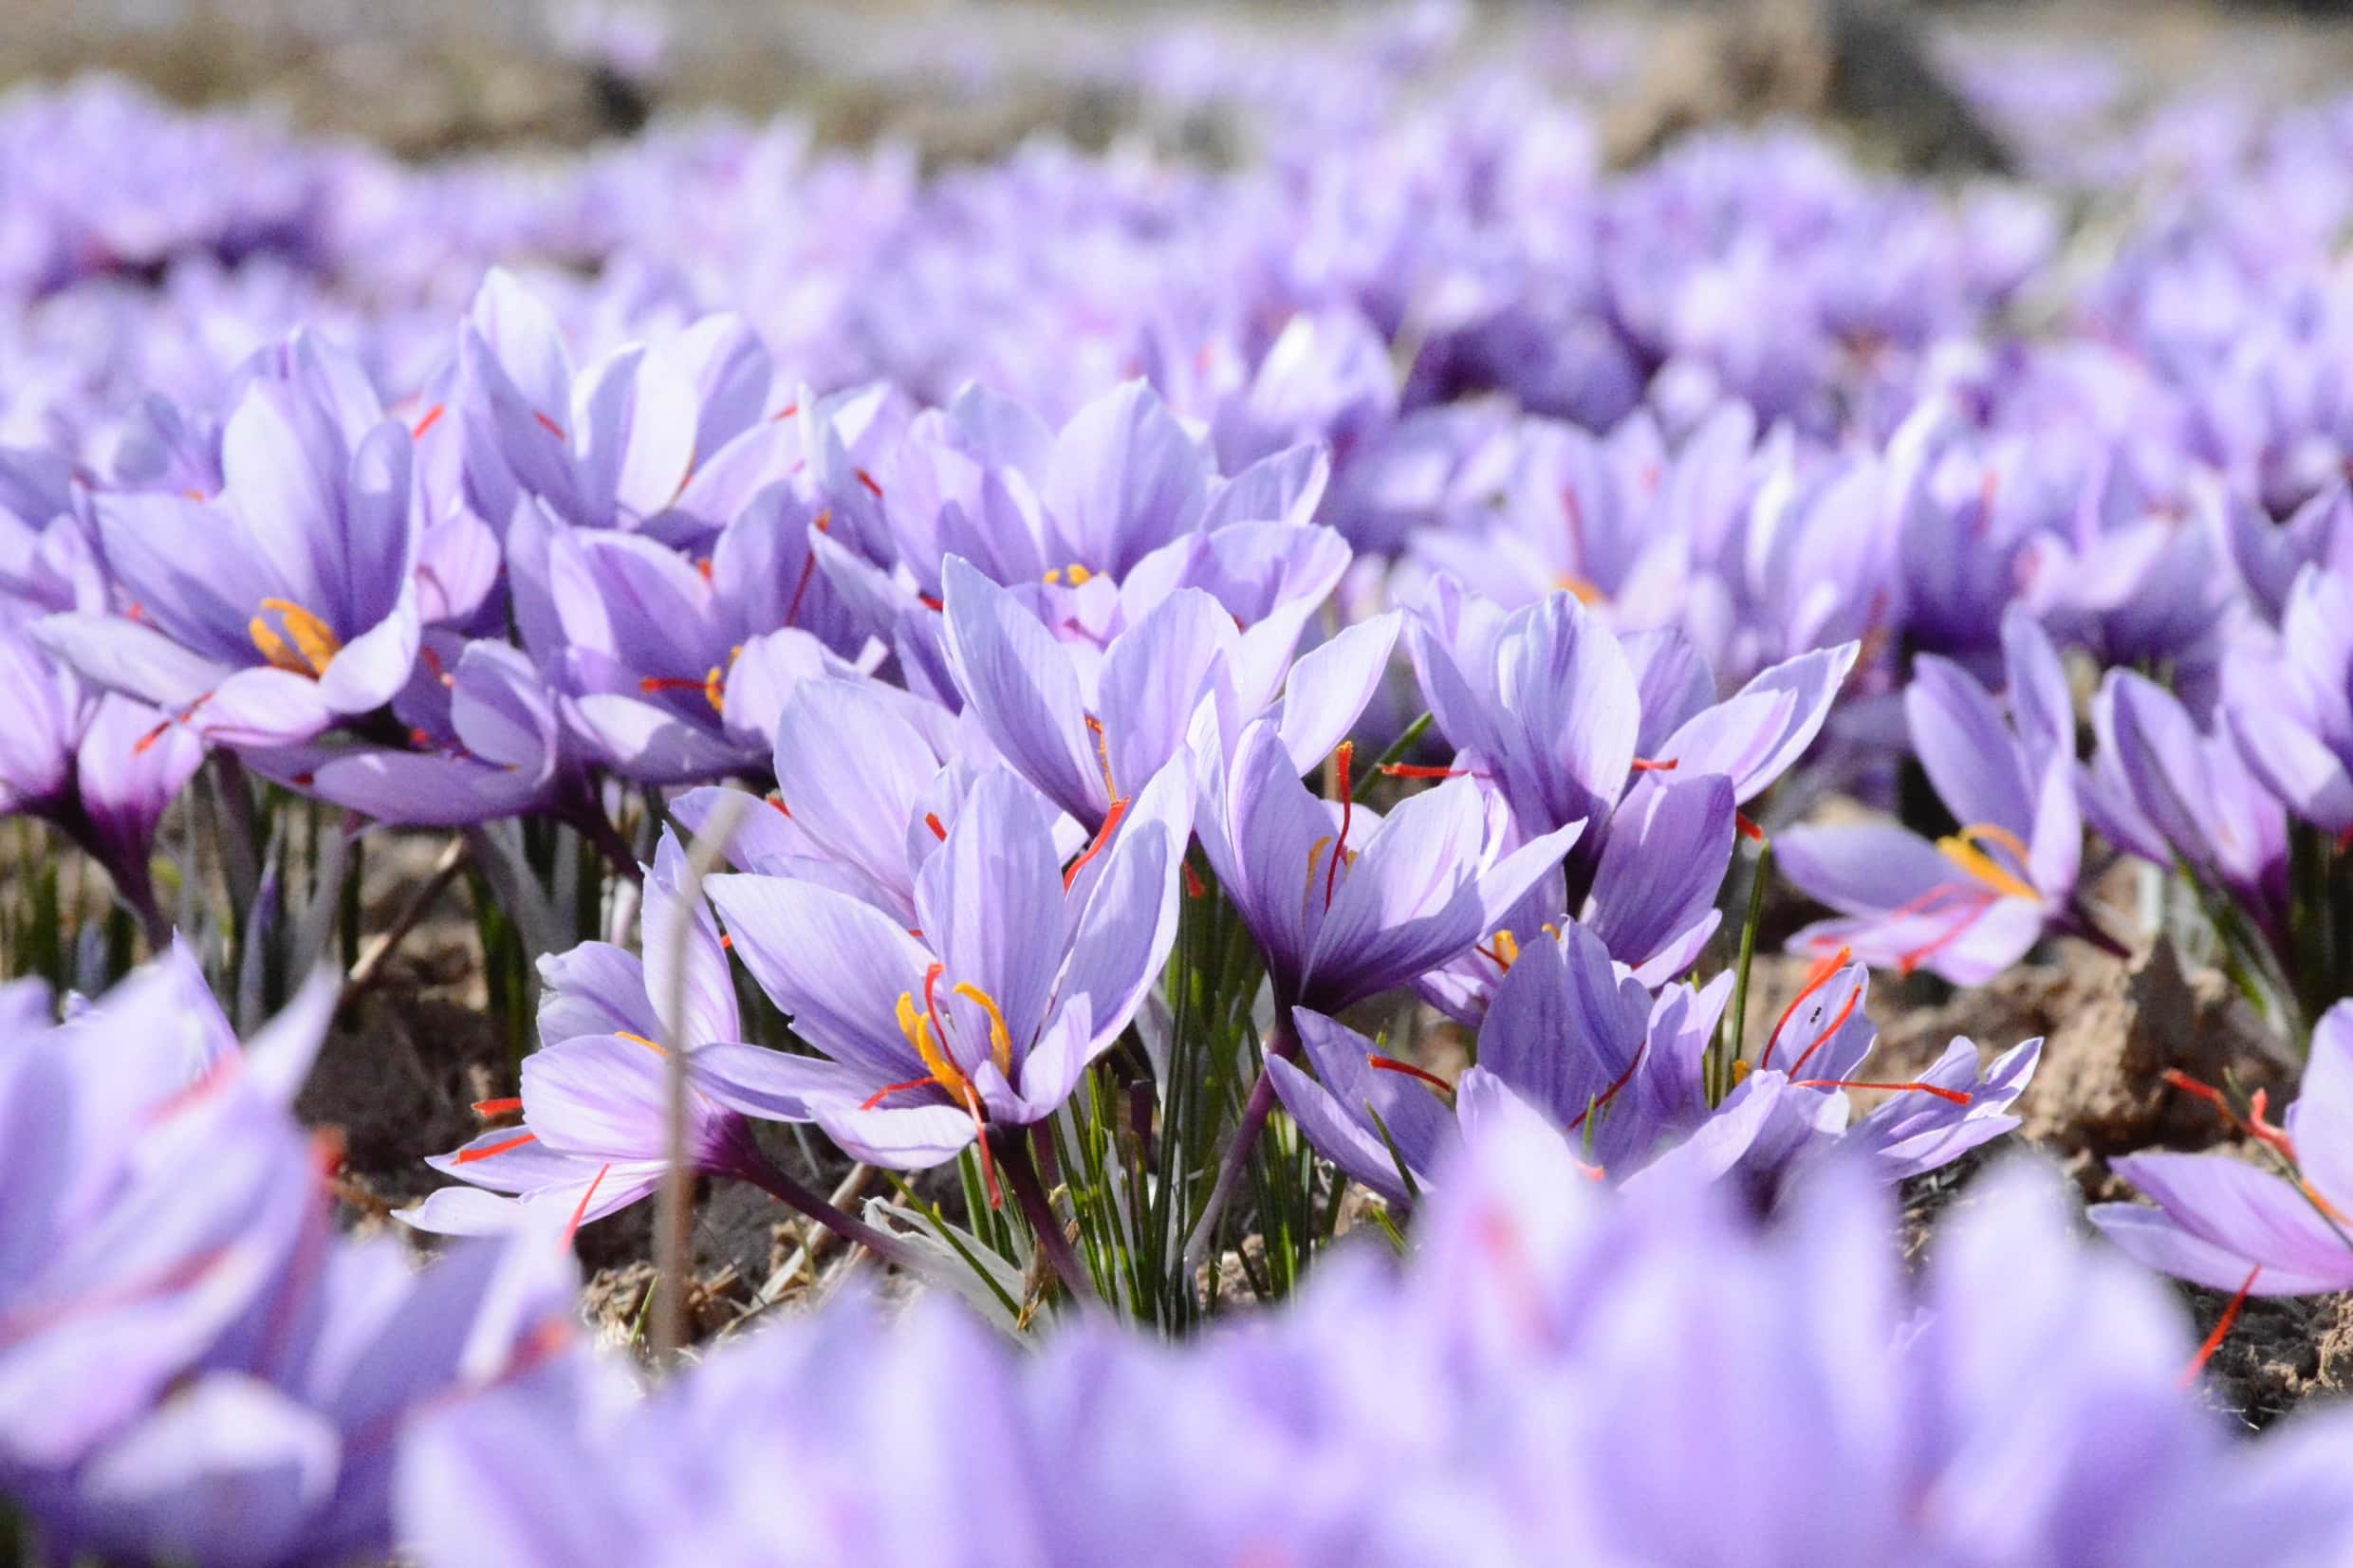 Purple flowers blooming in Spring